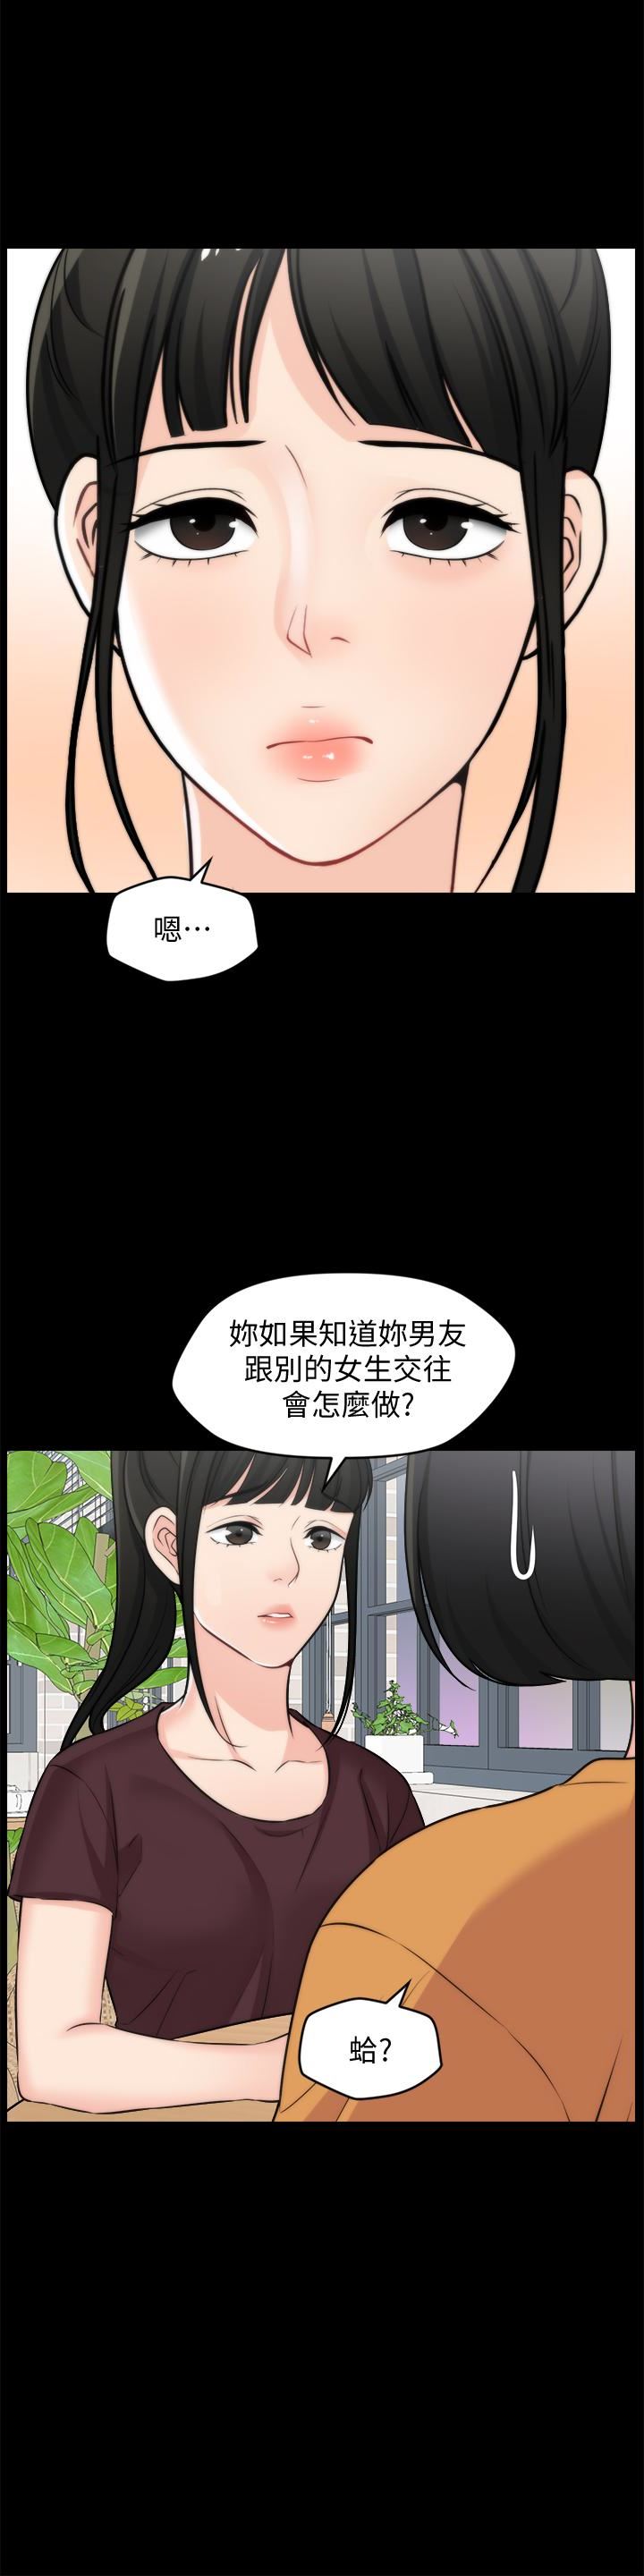 韩国污漫画 偷偷愛 第56话-两者择一 8